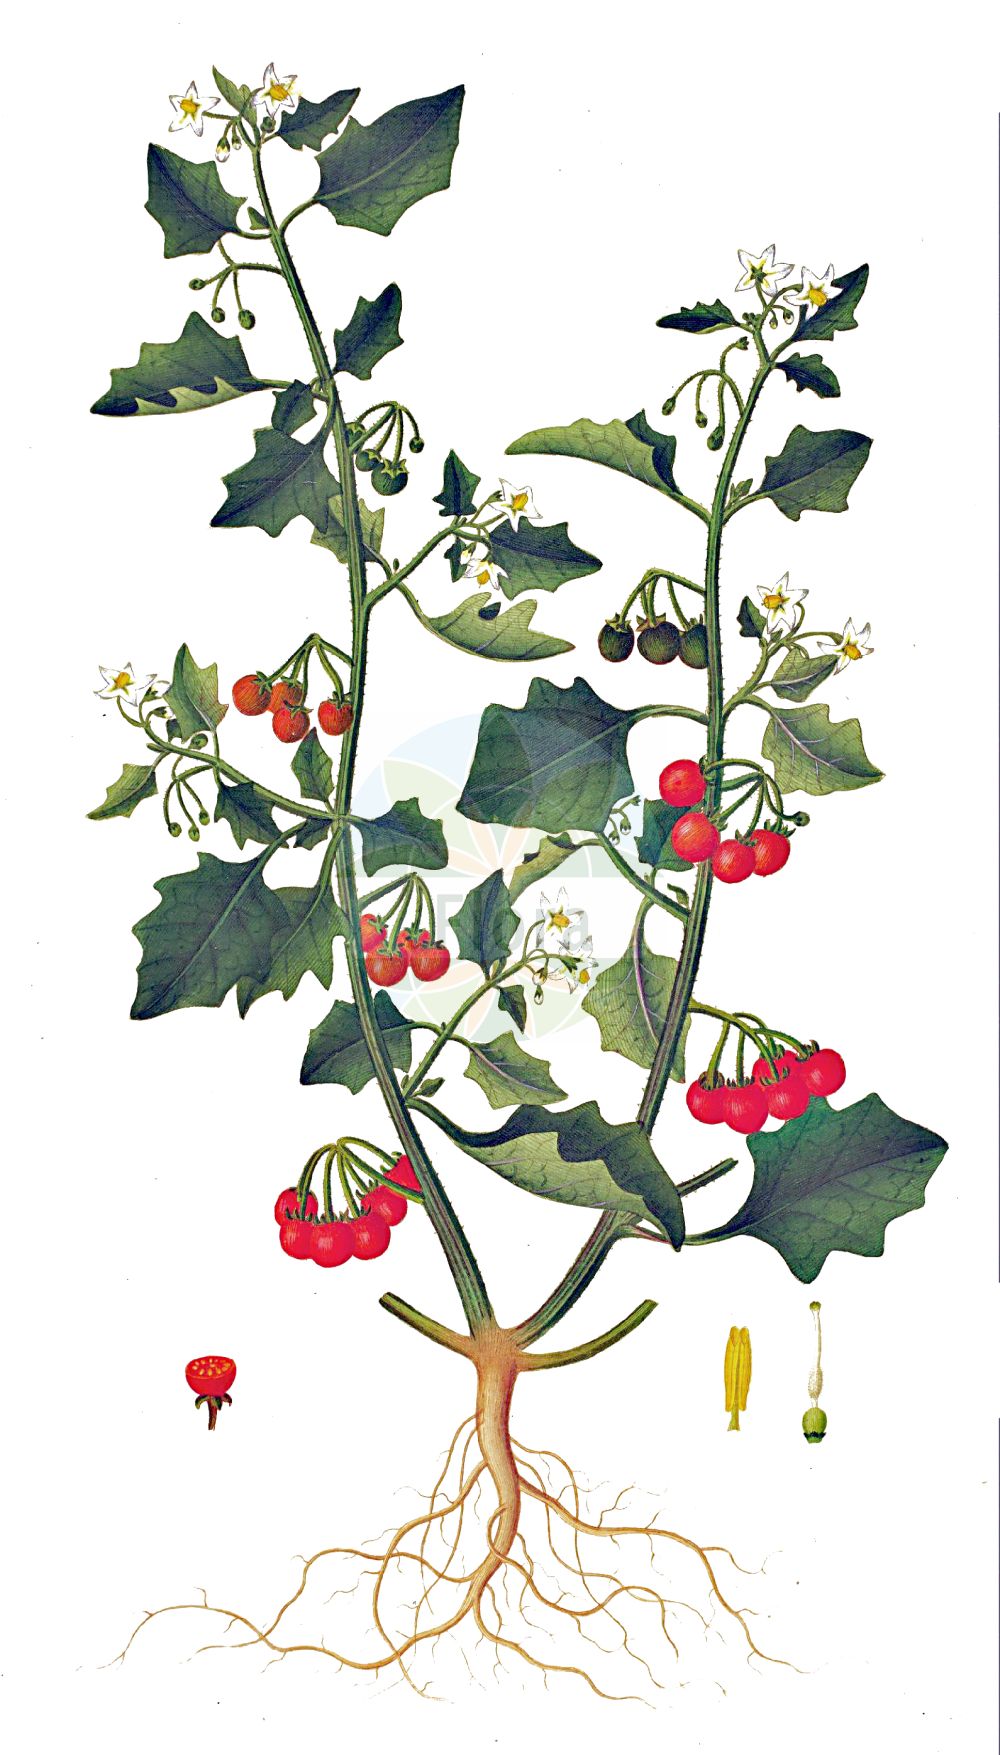 Historische Abbildung von Solanum villosum agg. (Rotfrüchtiger Nachtschatten - Red Nightshade). Das Bild zeigt Blatt, Bluete, Frucht und Same. ---- Historical Drawing of Solanum villosum agg. (Rotfrüchtiger Nachtschatten - Red Nightshade). The image is showing leaf, flower, fruit and seed.(Solanum villosum agg.,Rotfrüchtiger Nachtschatten,Red Nightshade,Rotfruechtiger Nachtschatten,Gelbfruechtiger Nachtschatten,Red Nightshade,Woolly Nightshade,Solanum,Nachtschatten,Bindweed,Solanaceae,Nachtschattengewächse,Potato family,Blatt,Bluete,Frucht,Same,leaf,flower,fruit,seed,Oeder (1761-1883))